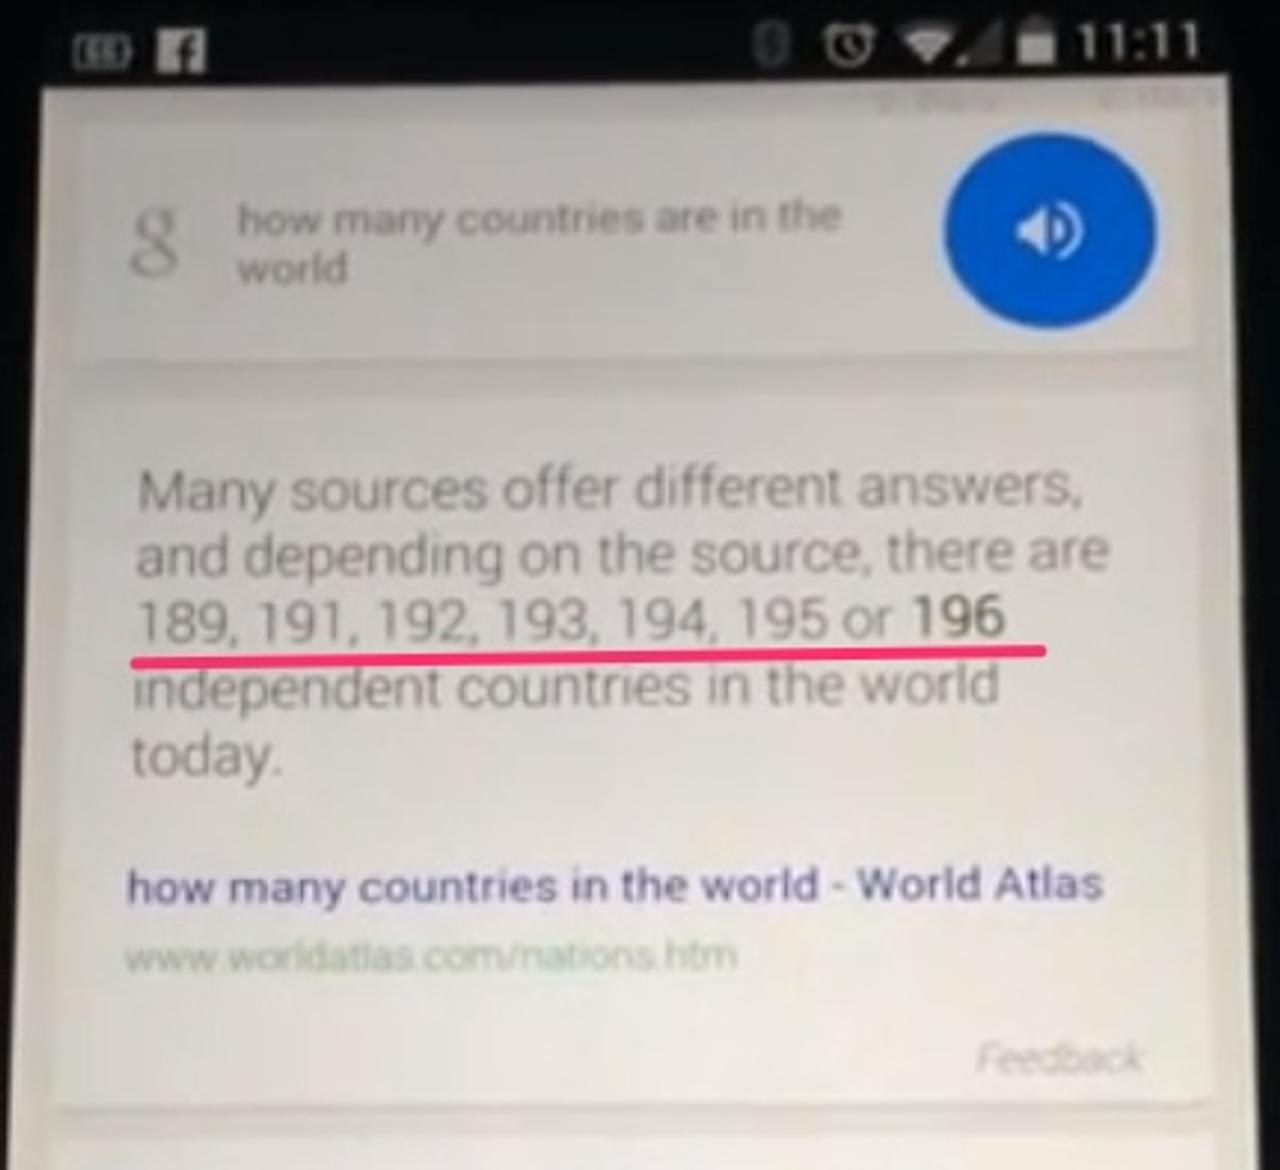 Google Now｢世界には18京9191兆1921億9319万4195ヵ国が存在｣